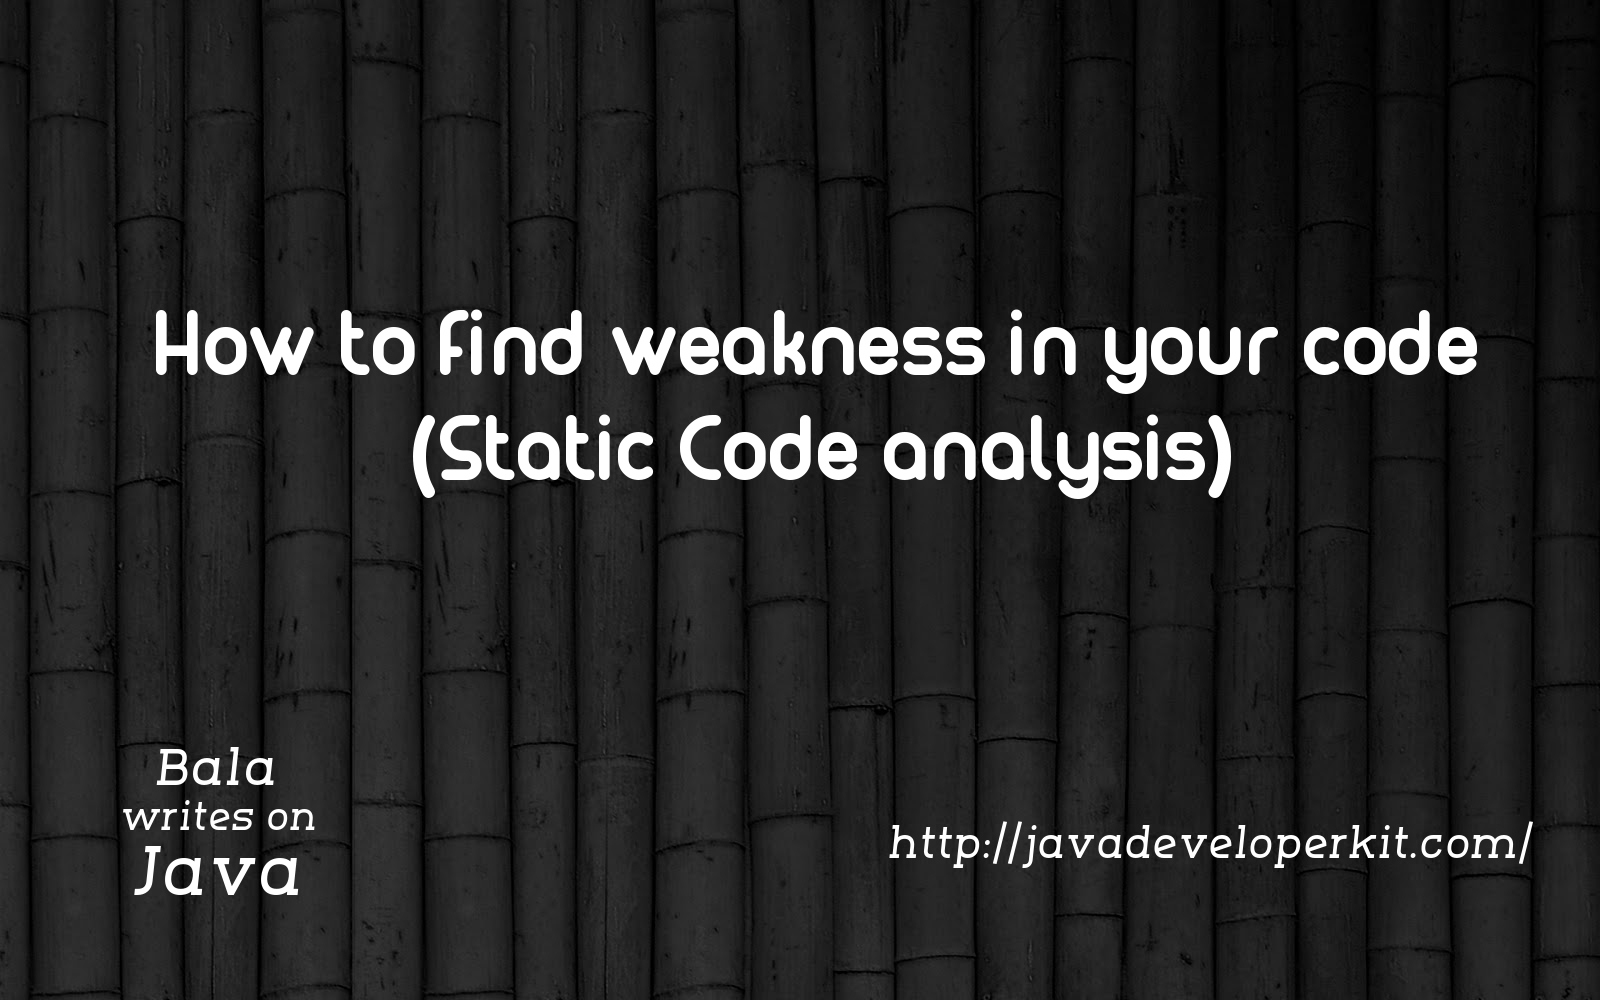 Static code analysis